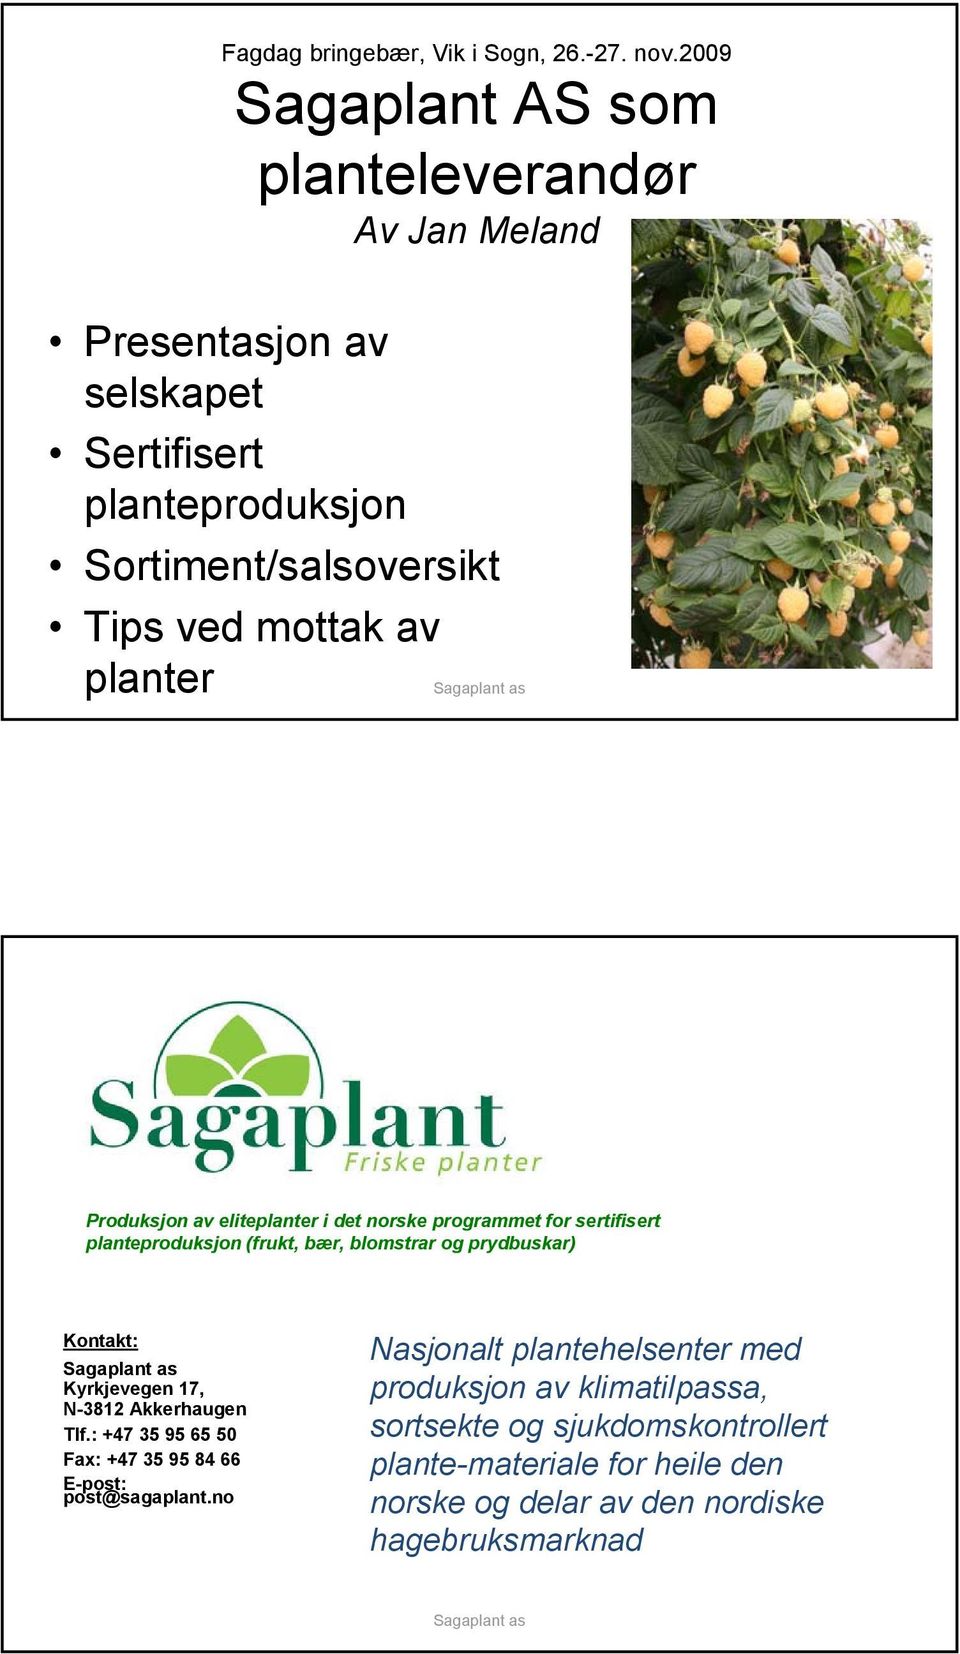 planter Produksjon av eliteplanter i det norske programmet for sertifisert planteproduksjon (frukt, bær, blomstrar og prydbuskar) Kontakt: Kyrkjevegen